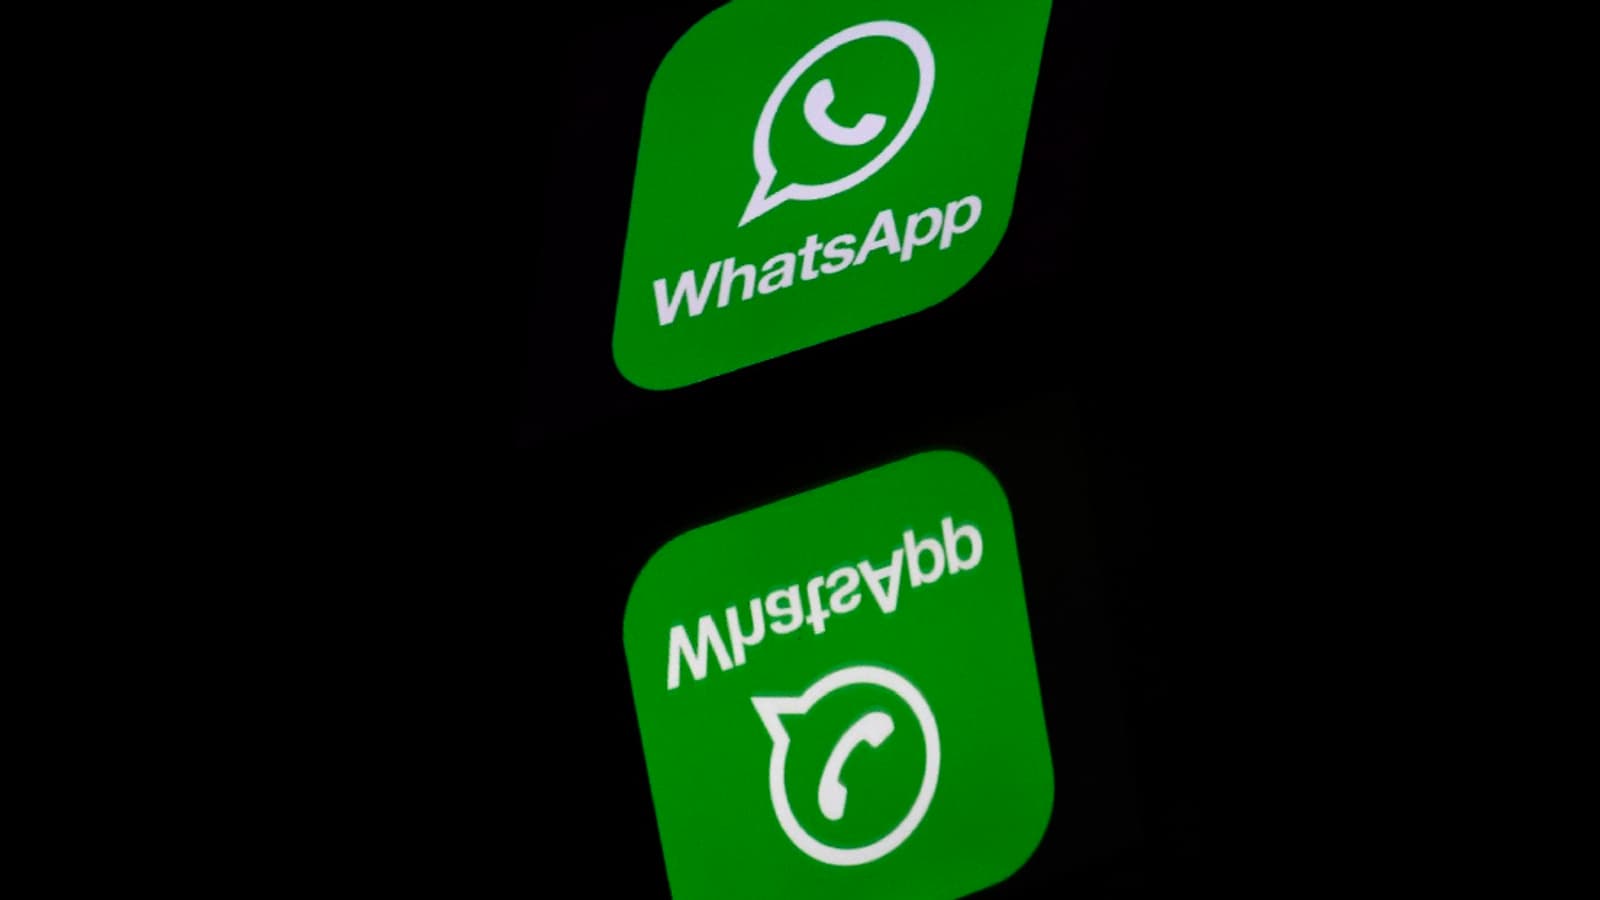 Le chiffrement de WhatsApp dans le viseur de l'Union européenne?